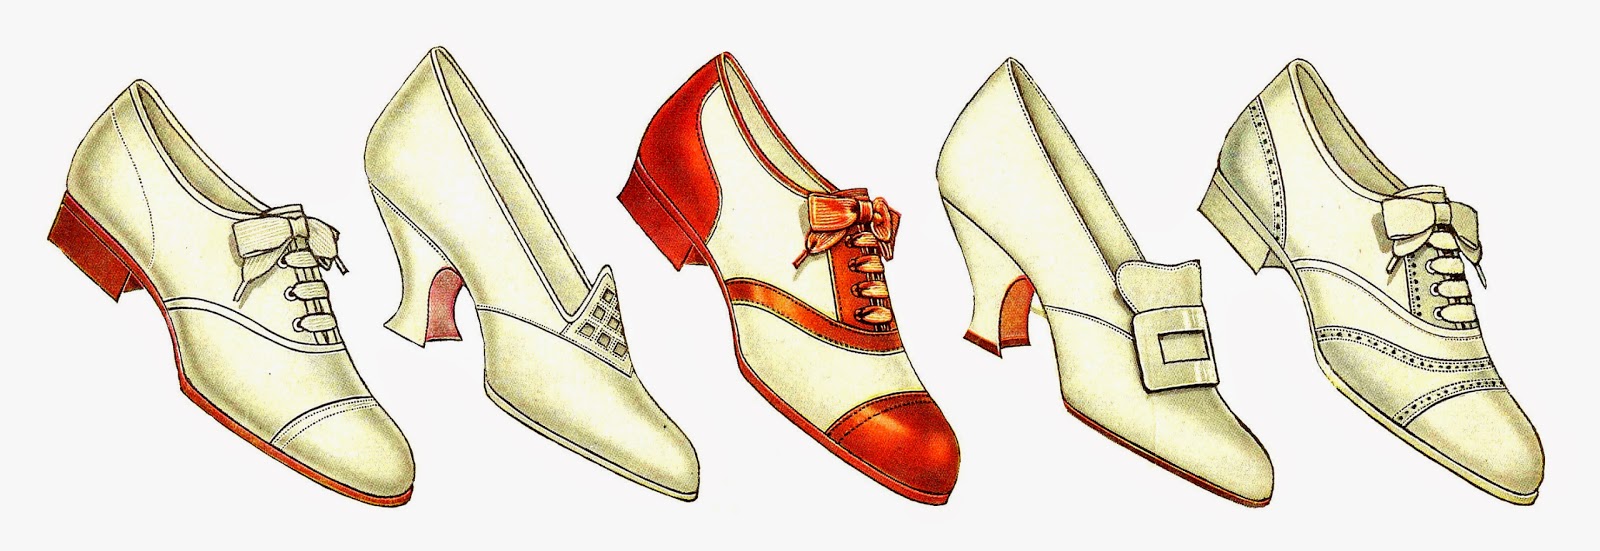 Clip Art  5 Vintage Women S Shoe Graphics Collage Sheet 1917 Fashion